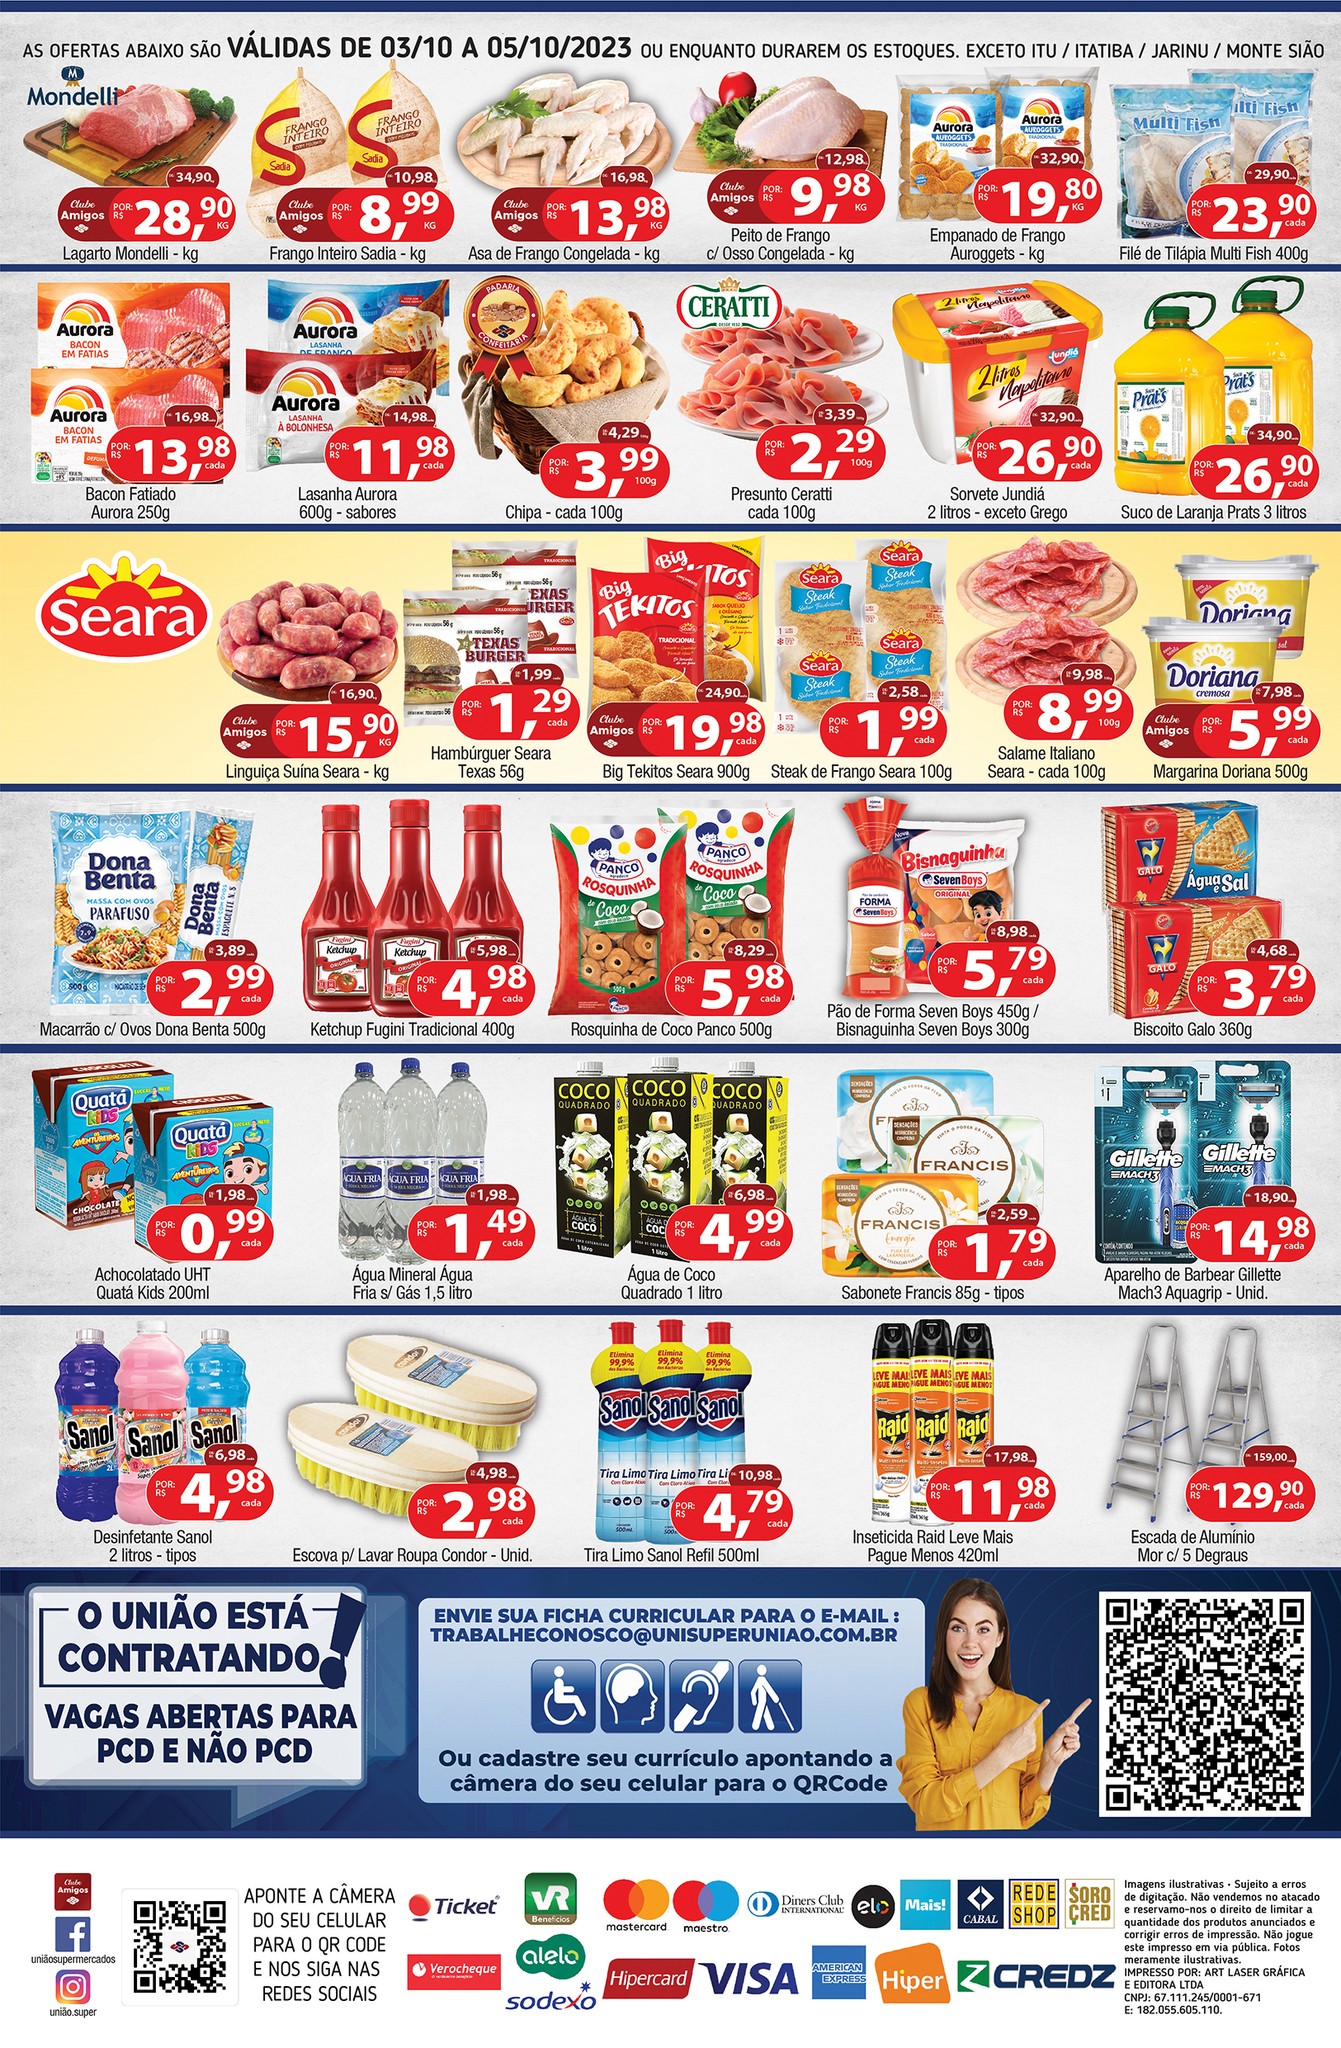 Especial de produtos Seara, carnes, hortifrúti e muito mais opções em promoção no União Supermercados